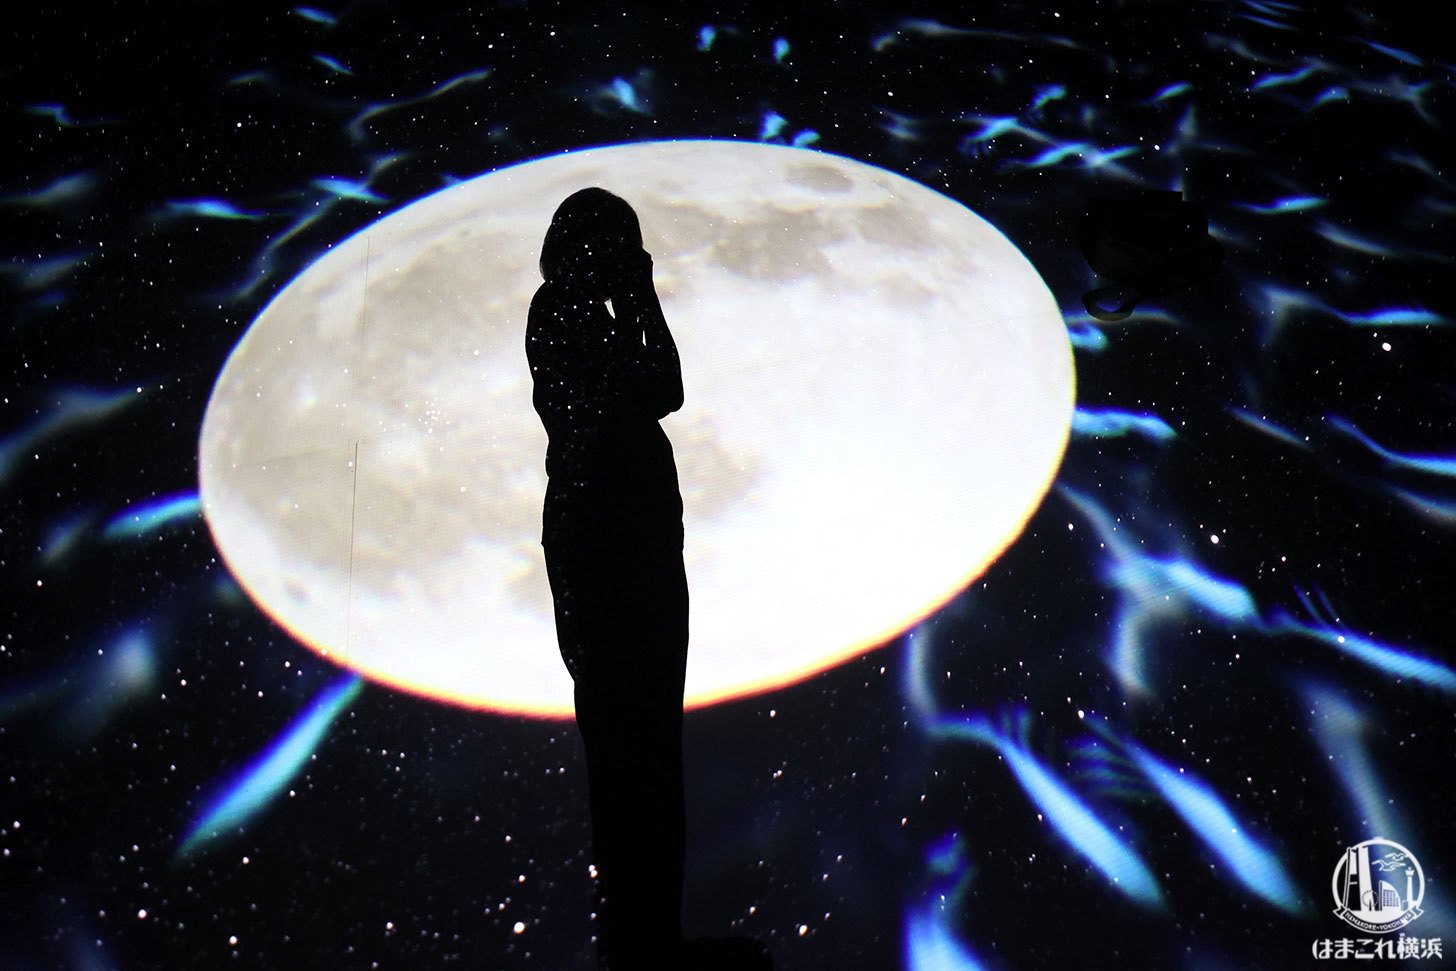 赤レンガ・アートプラネタリウム「星と歩く」足元に浮かぶ月